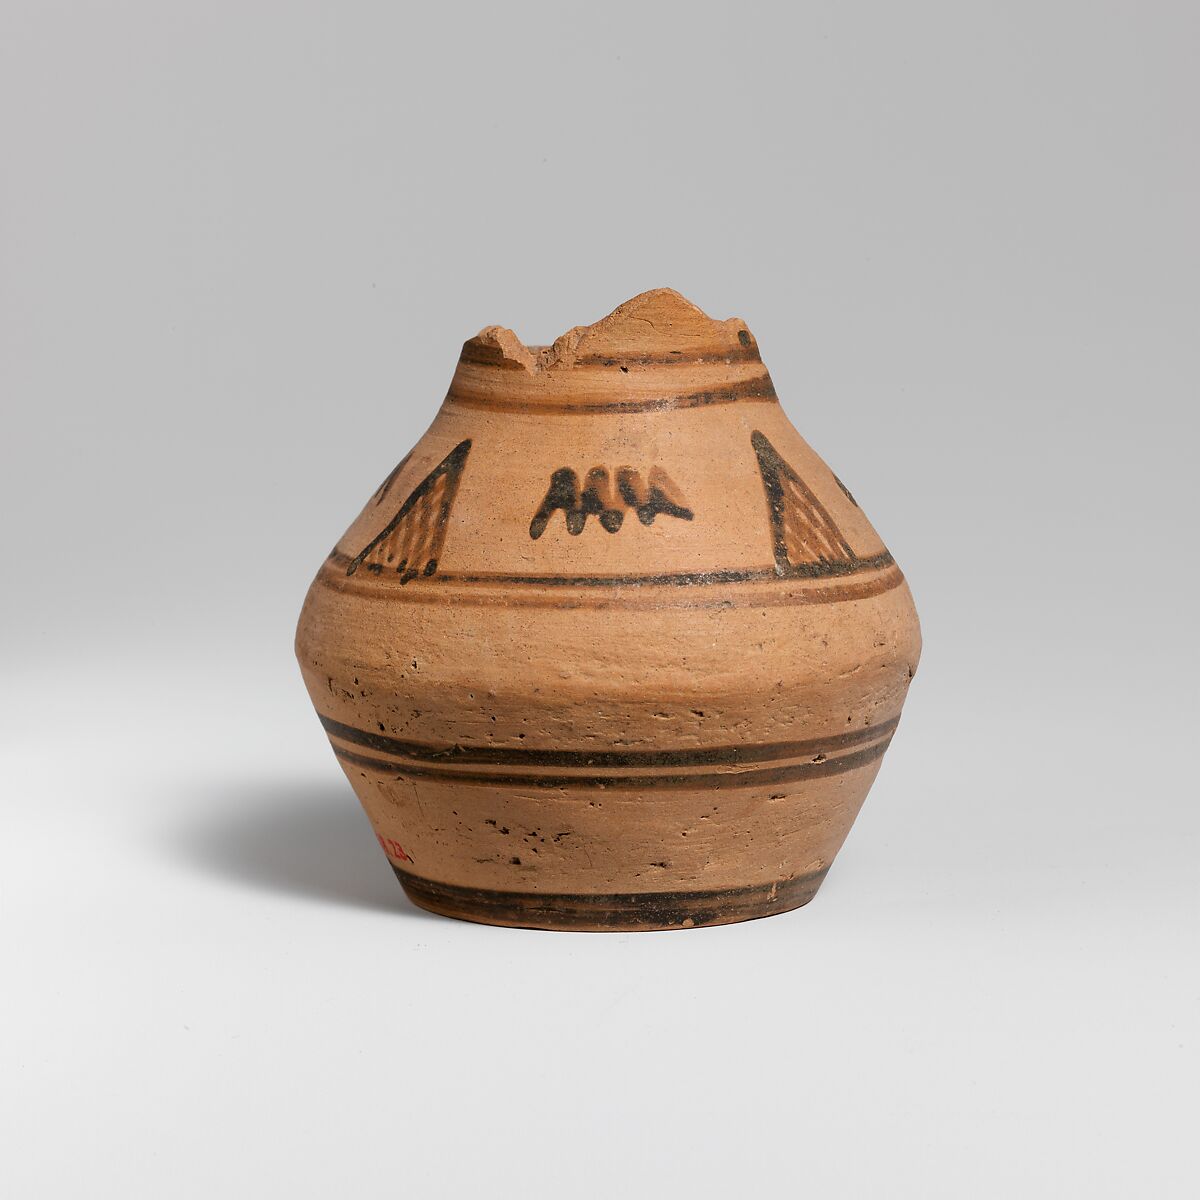 Fragmentary terracotta oinochoe (jug), Terracotta, Greek, Attic 